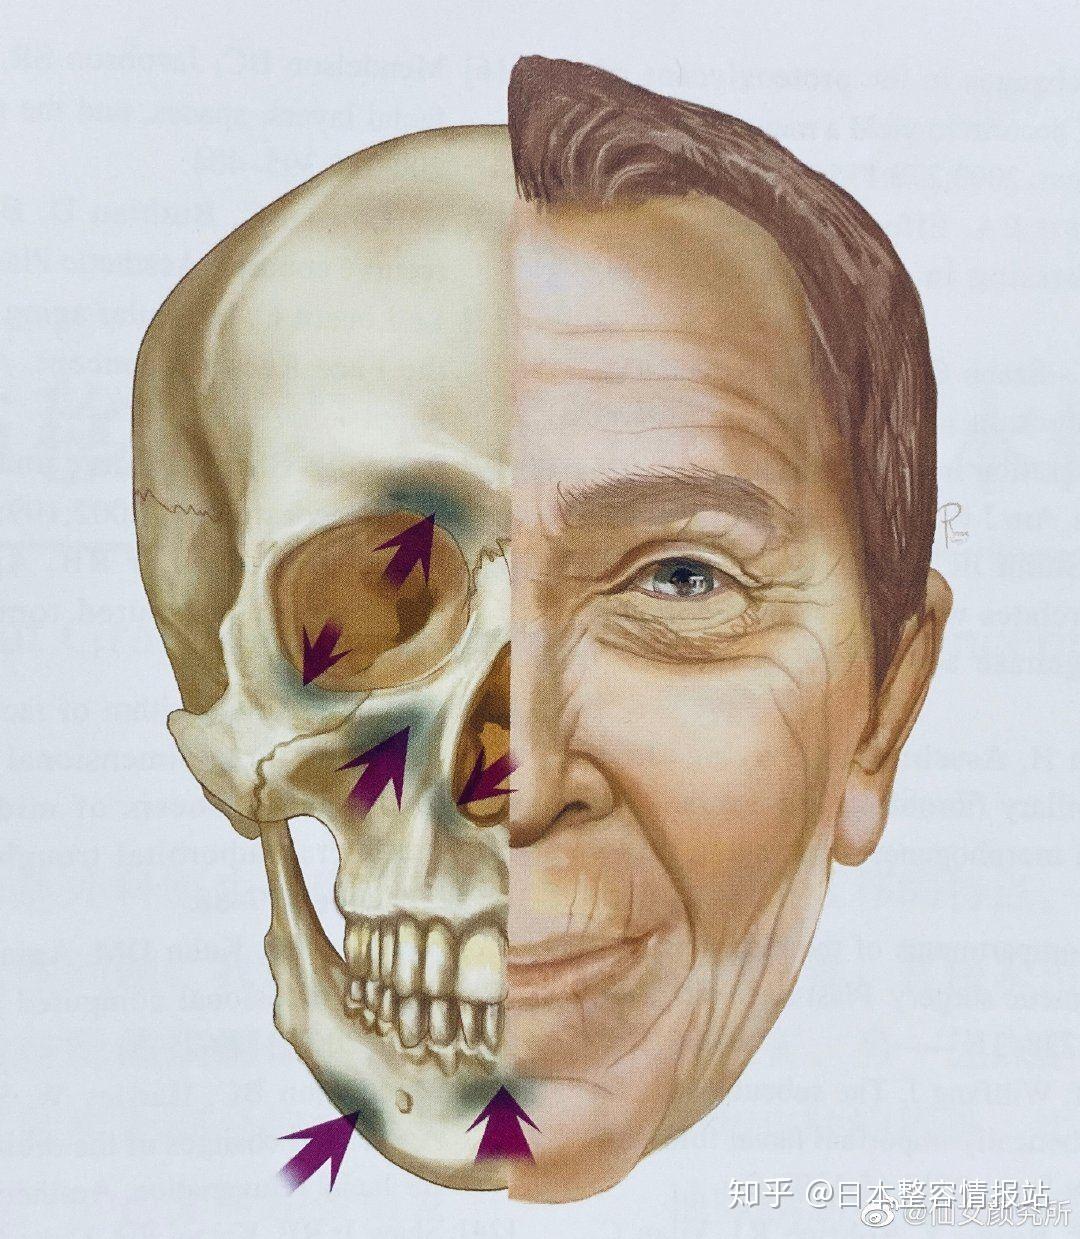 国内有四级磨骨资质的医院是哪些？下颌角、颧骨、正颌技术经验深的医生建议？费用4万-20万有哪些医生选择？ - 知乎